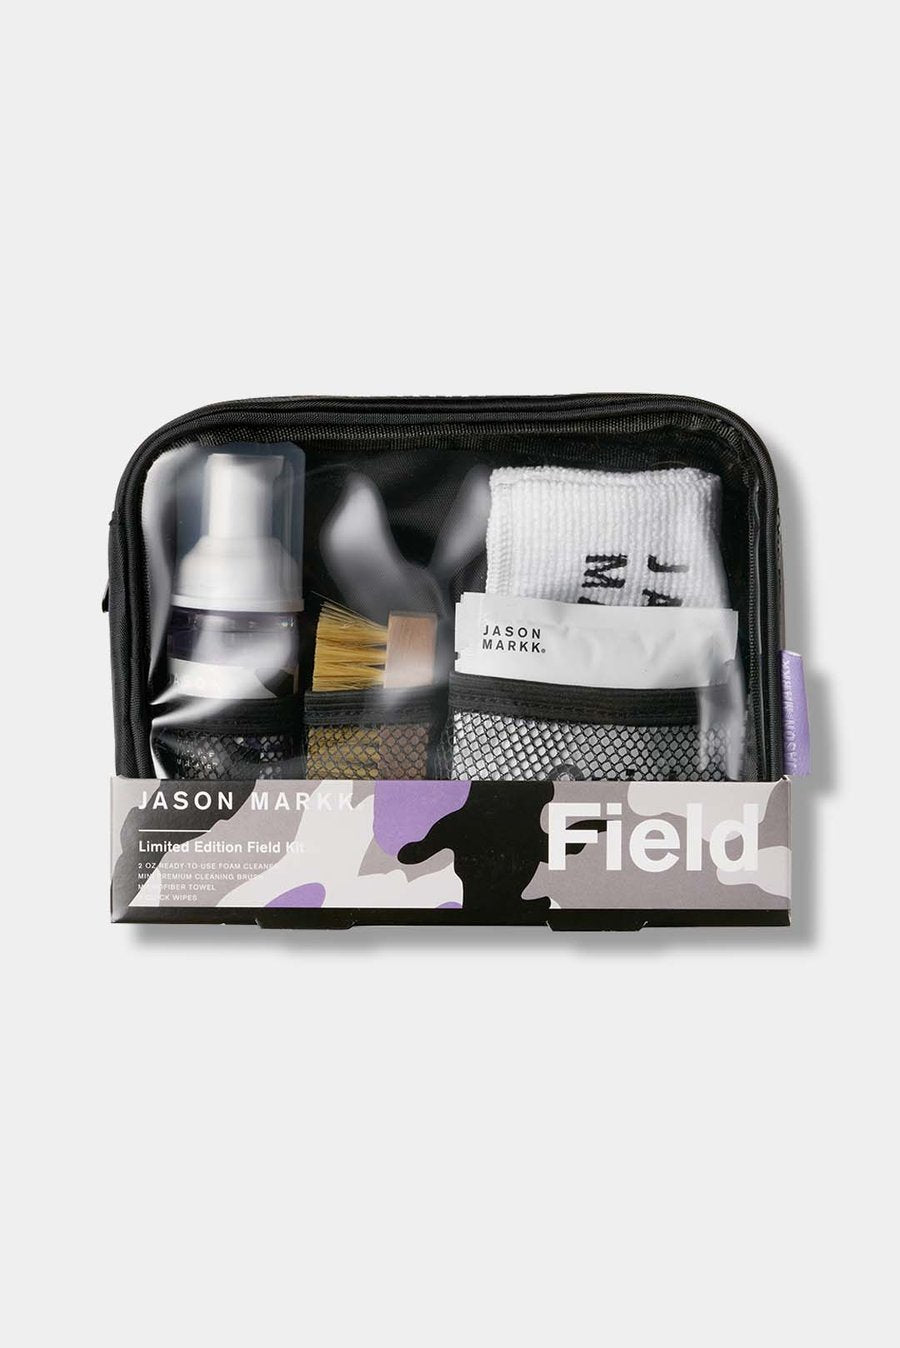 Jason Markk, Limited Edition Field Kit